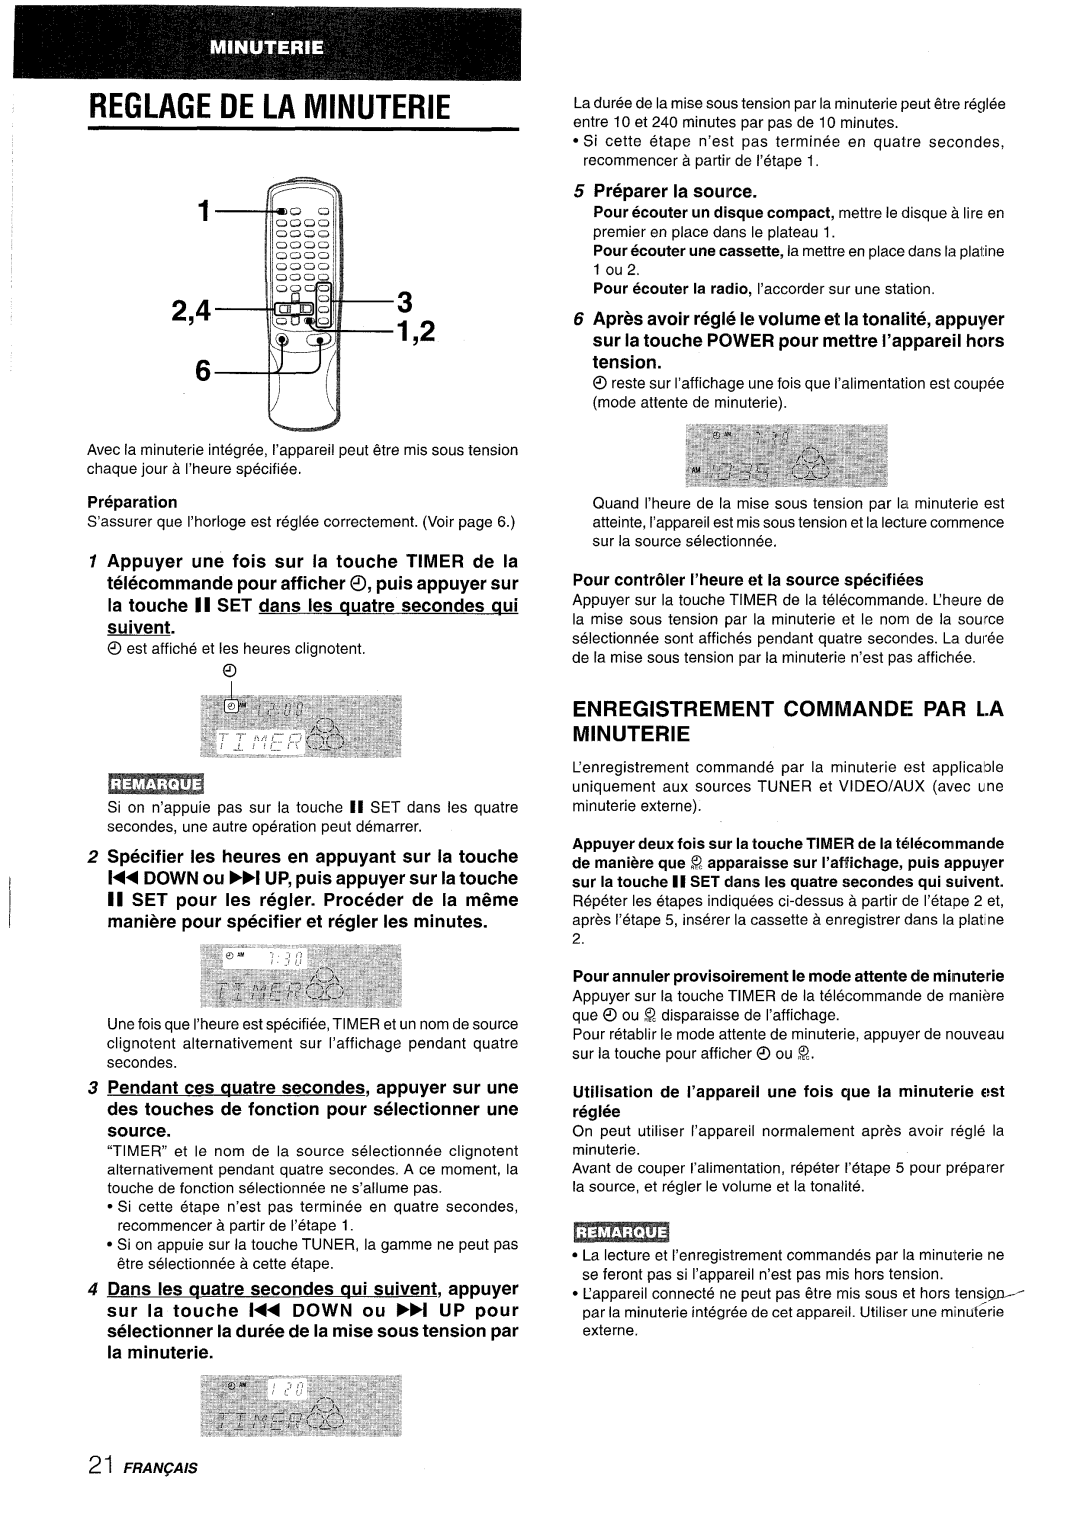 Aiwa NSX-AV800 manual Reglage De La Minuterie, Enregistrement Commande Par L.A Minuterie, Preparer la source 